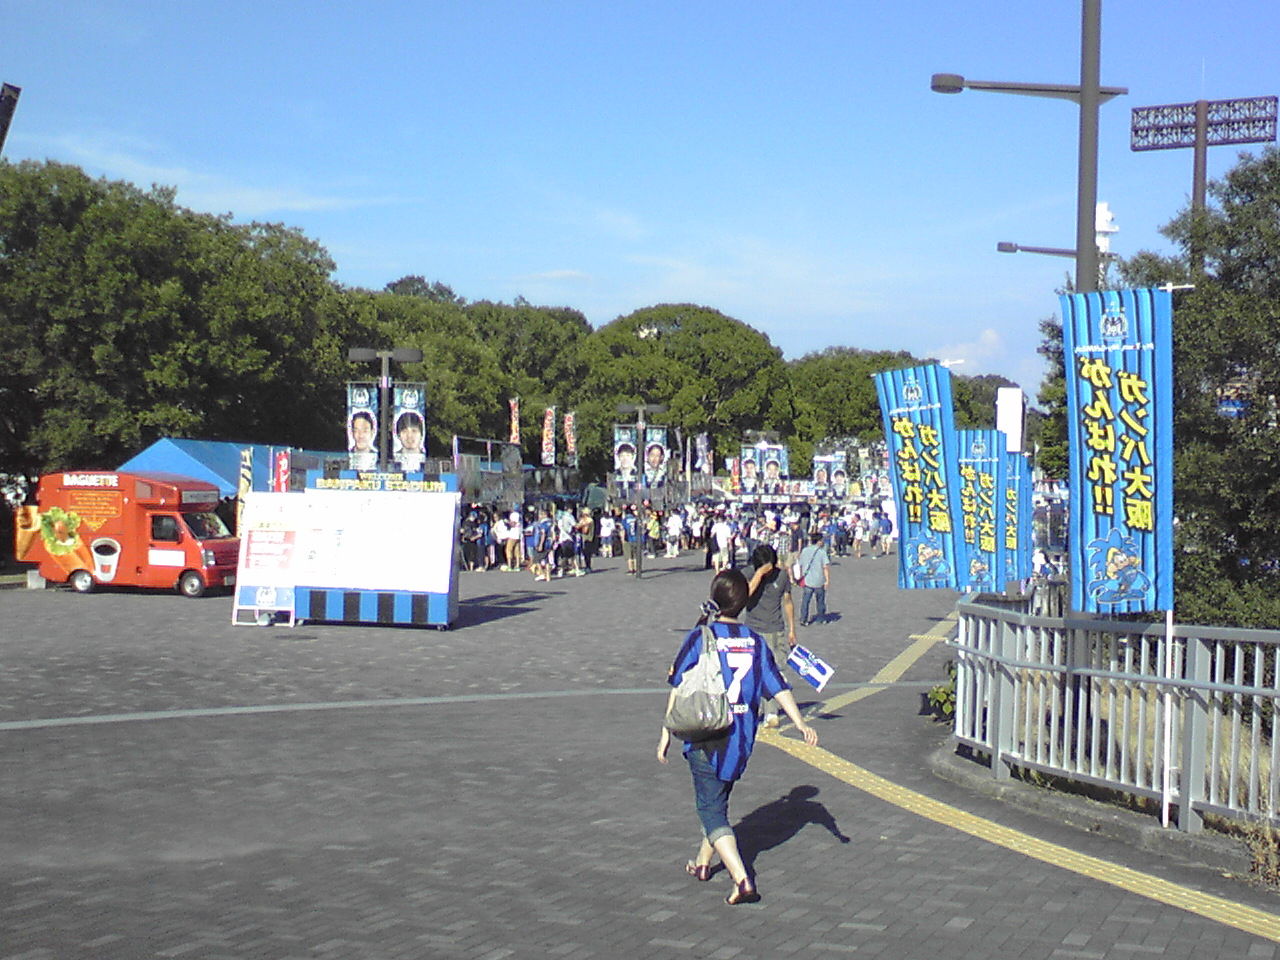 パナソニックキッズスクール スポーツフェスティバルにいってみた 13 8 18 ほくせつ青黒トピック ほくせつ青黒つーしん ほくつー ガンバ大阪でホームタウンを盛り上げるための情報サイト